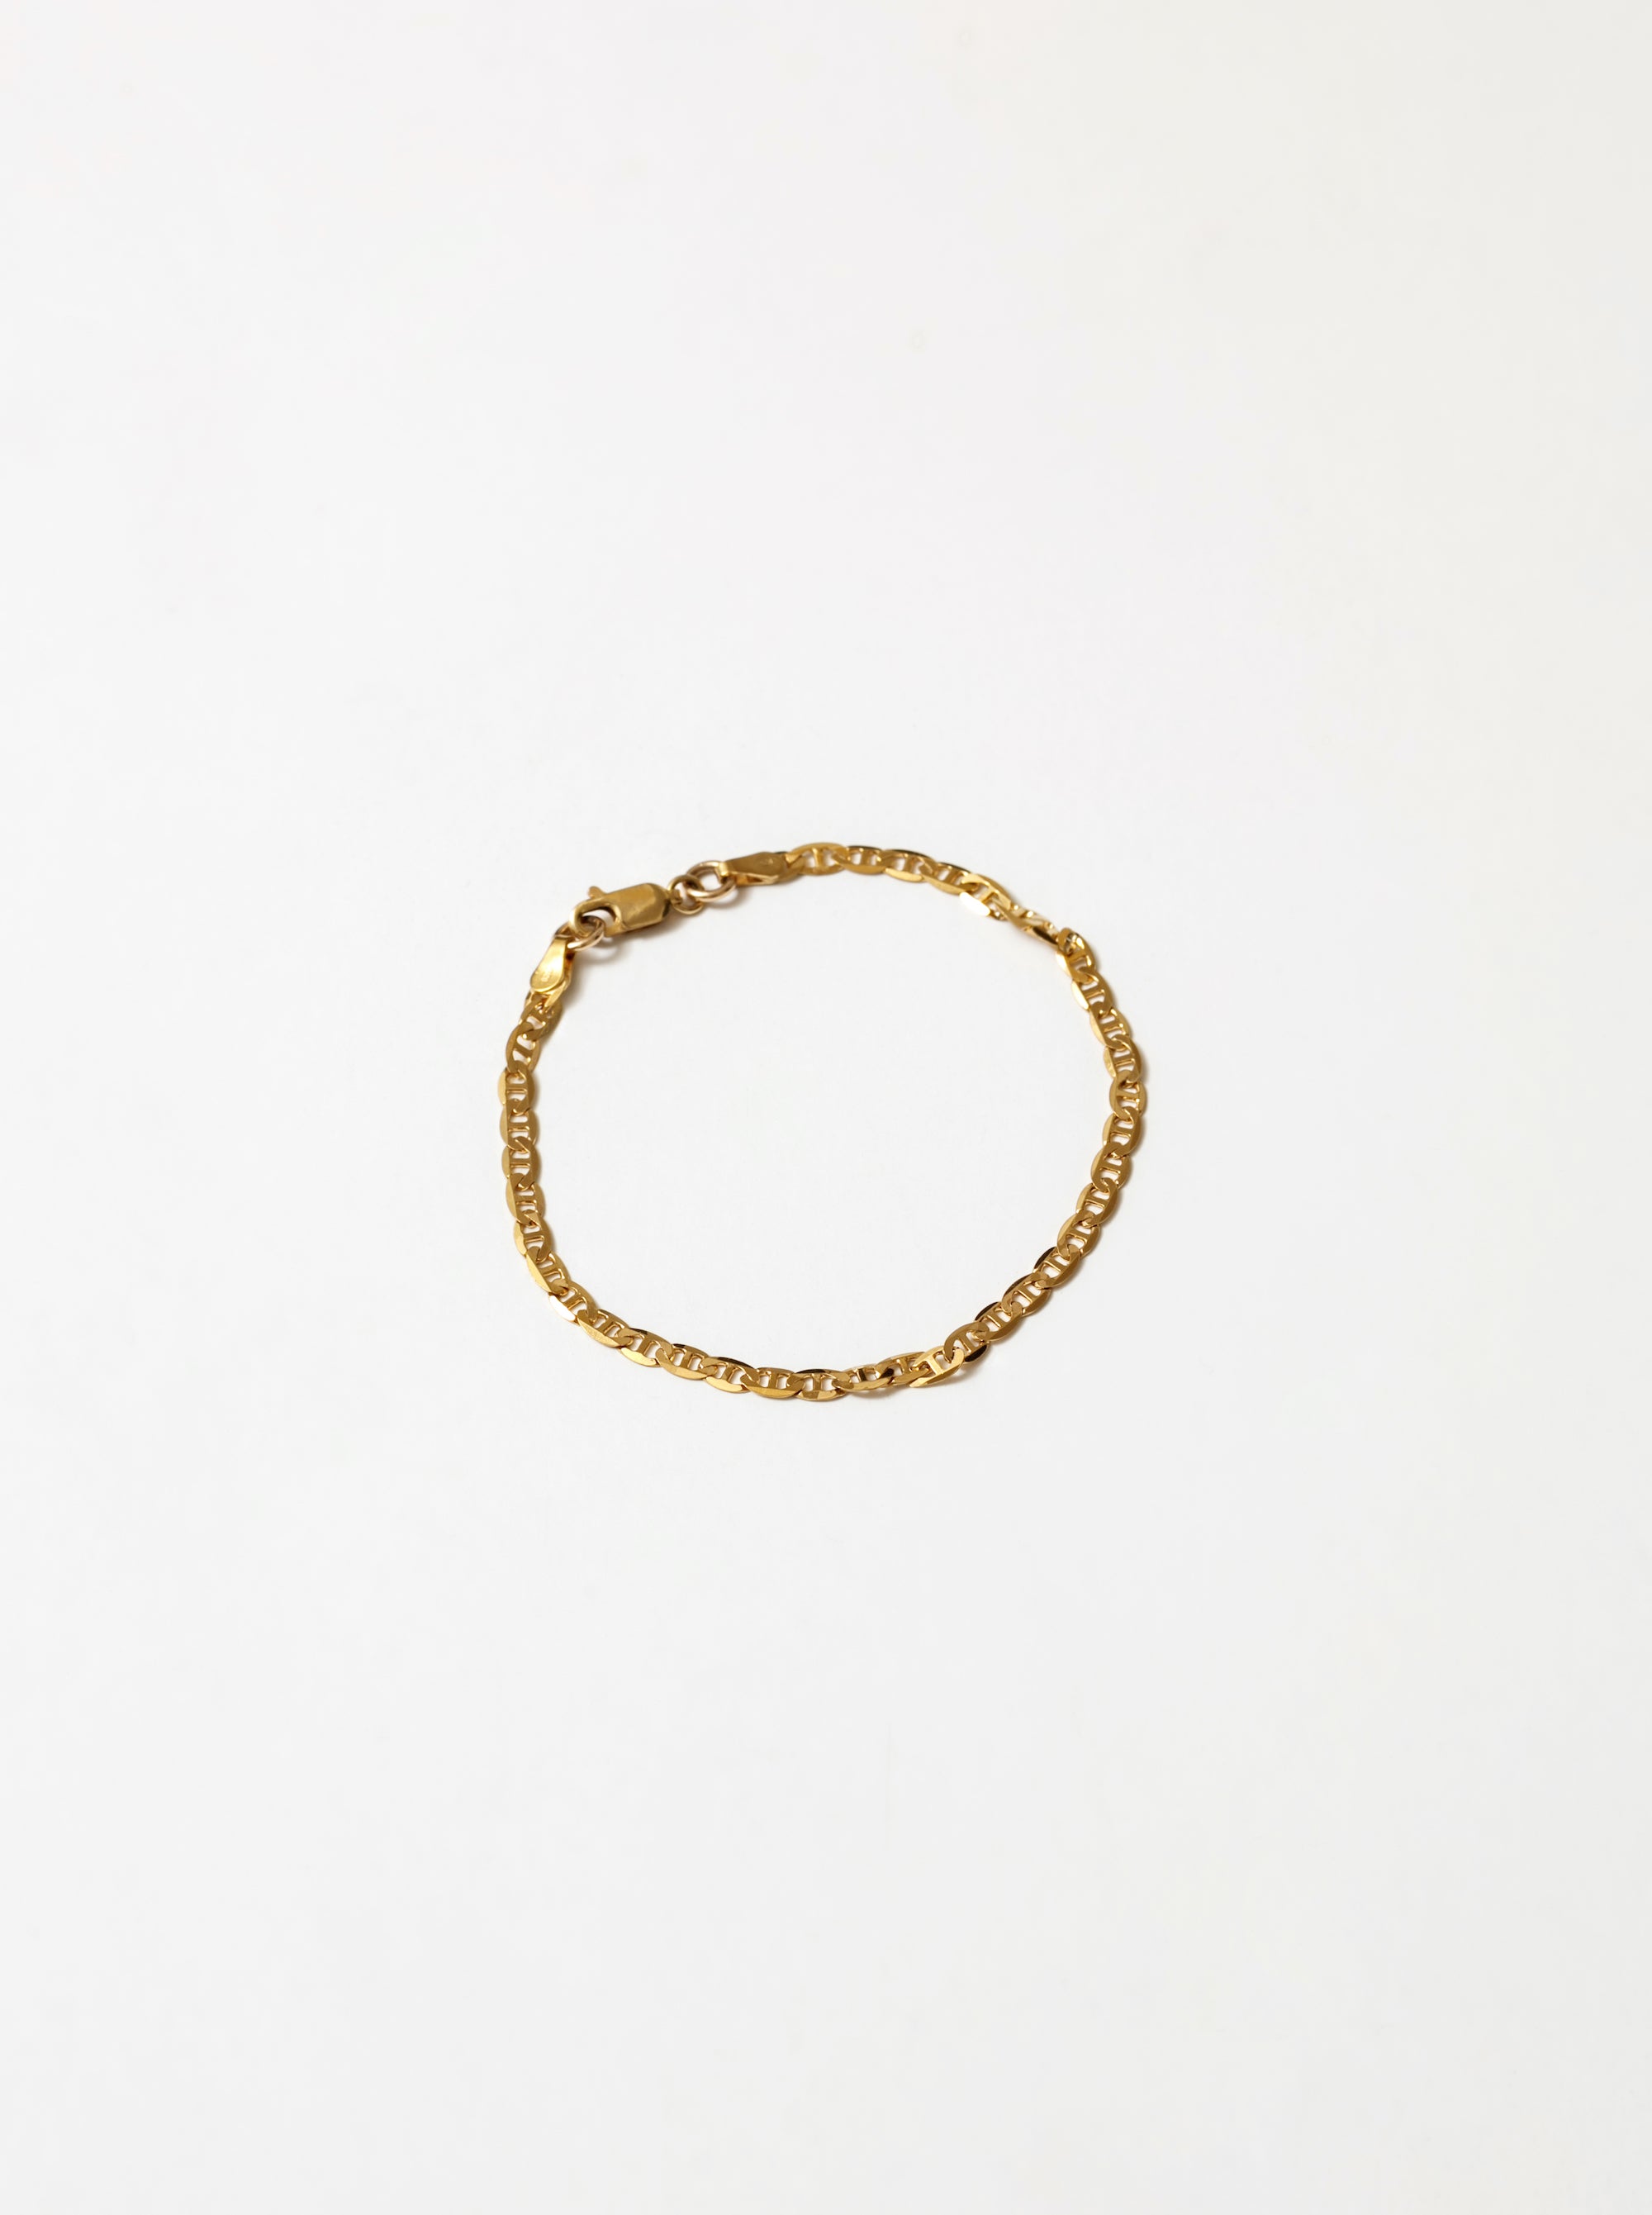 Toni Bracelet Gold